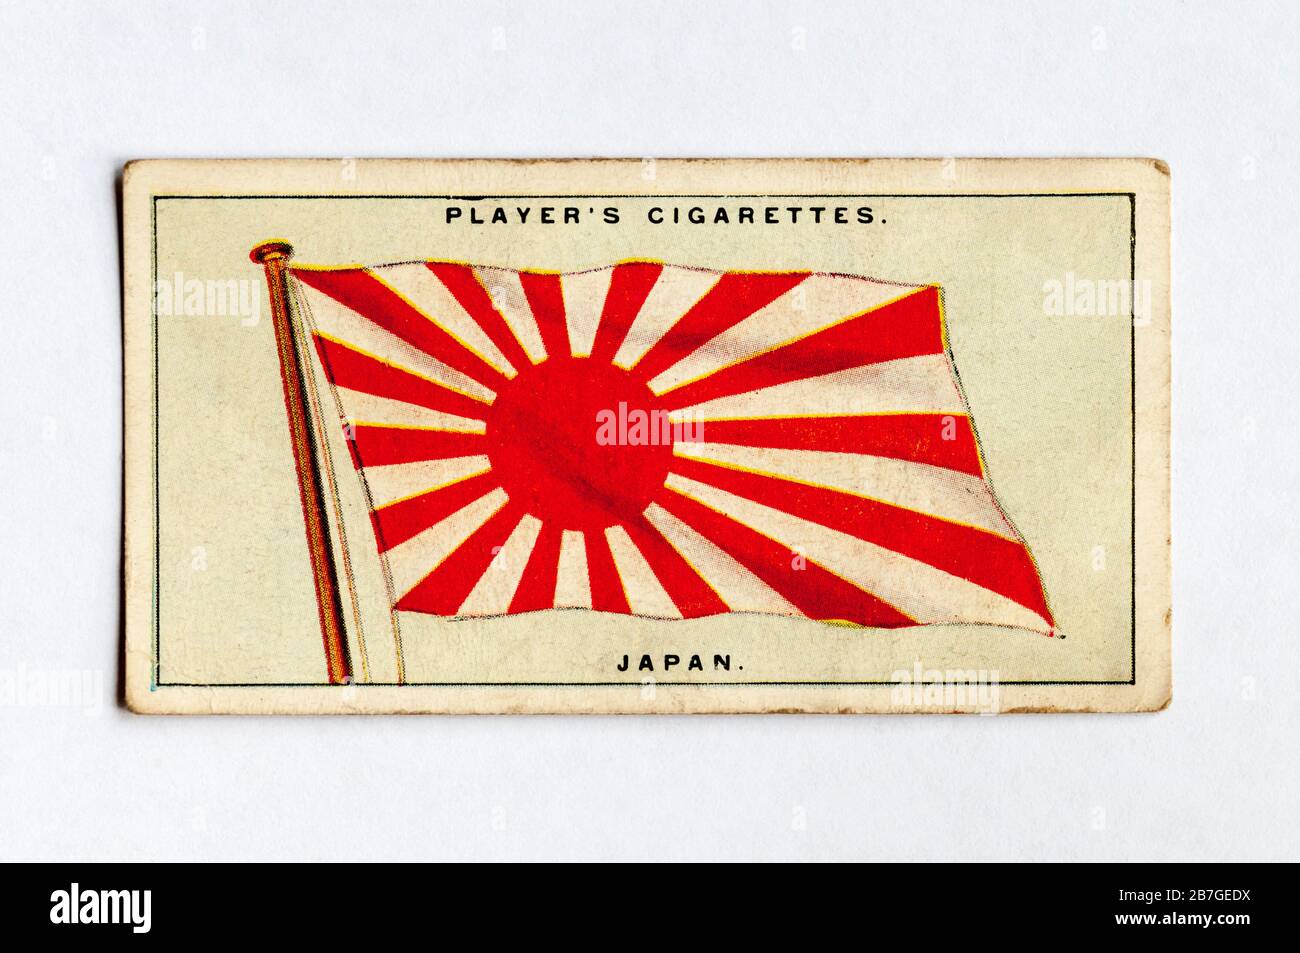 Die Zigarettenkarte des Spielers in Flags der Serie League of Nations zeigt die Flagge Japans. Ausgabe Von 1928. Stockfoto